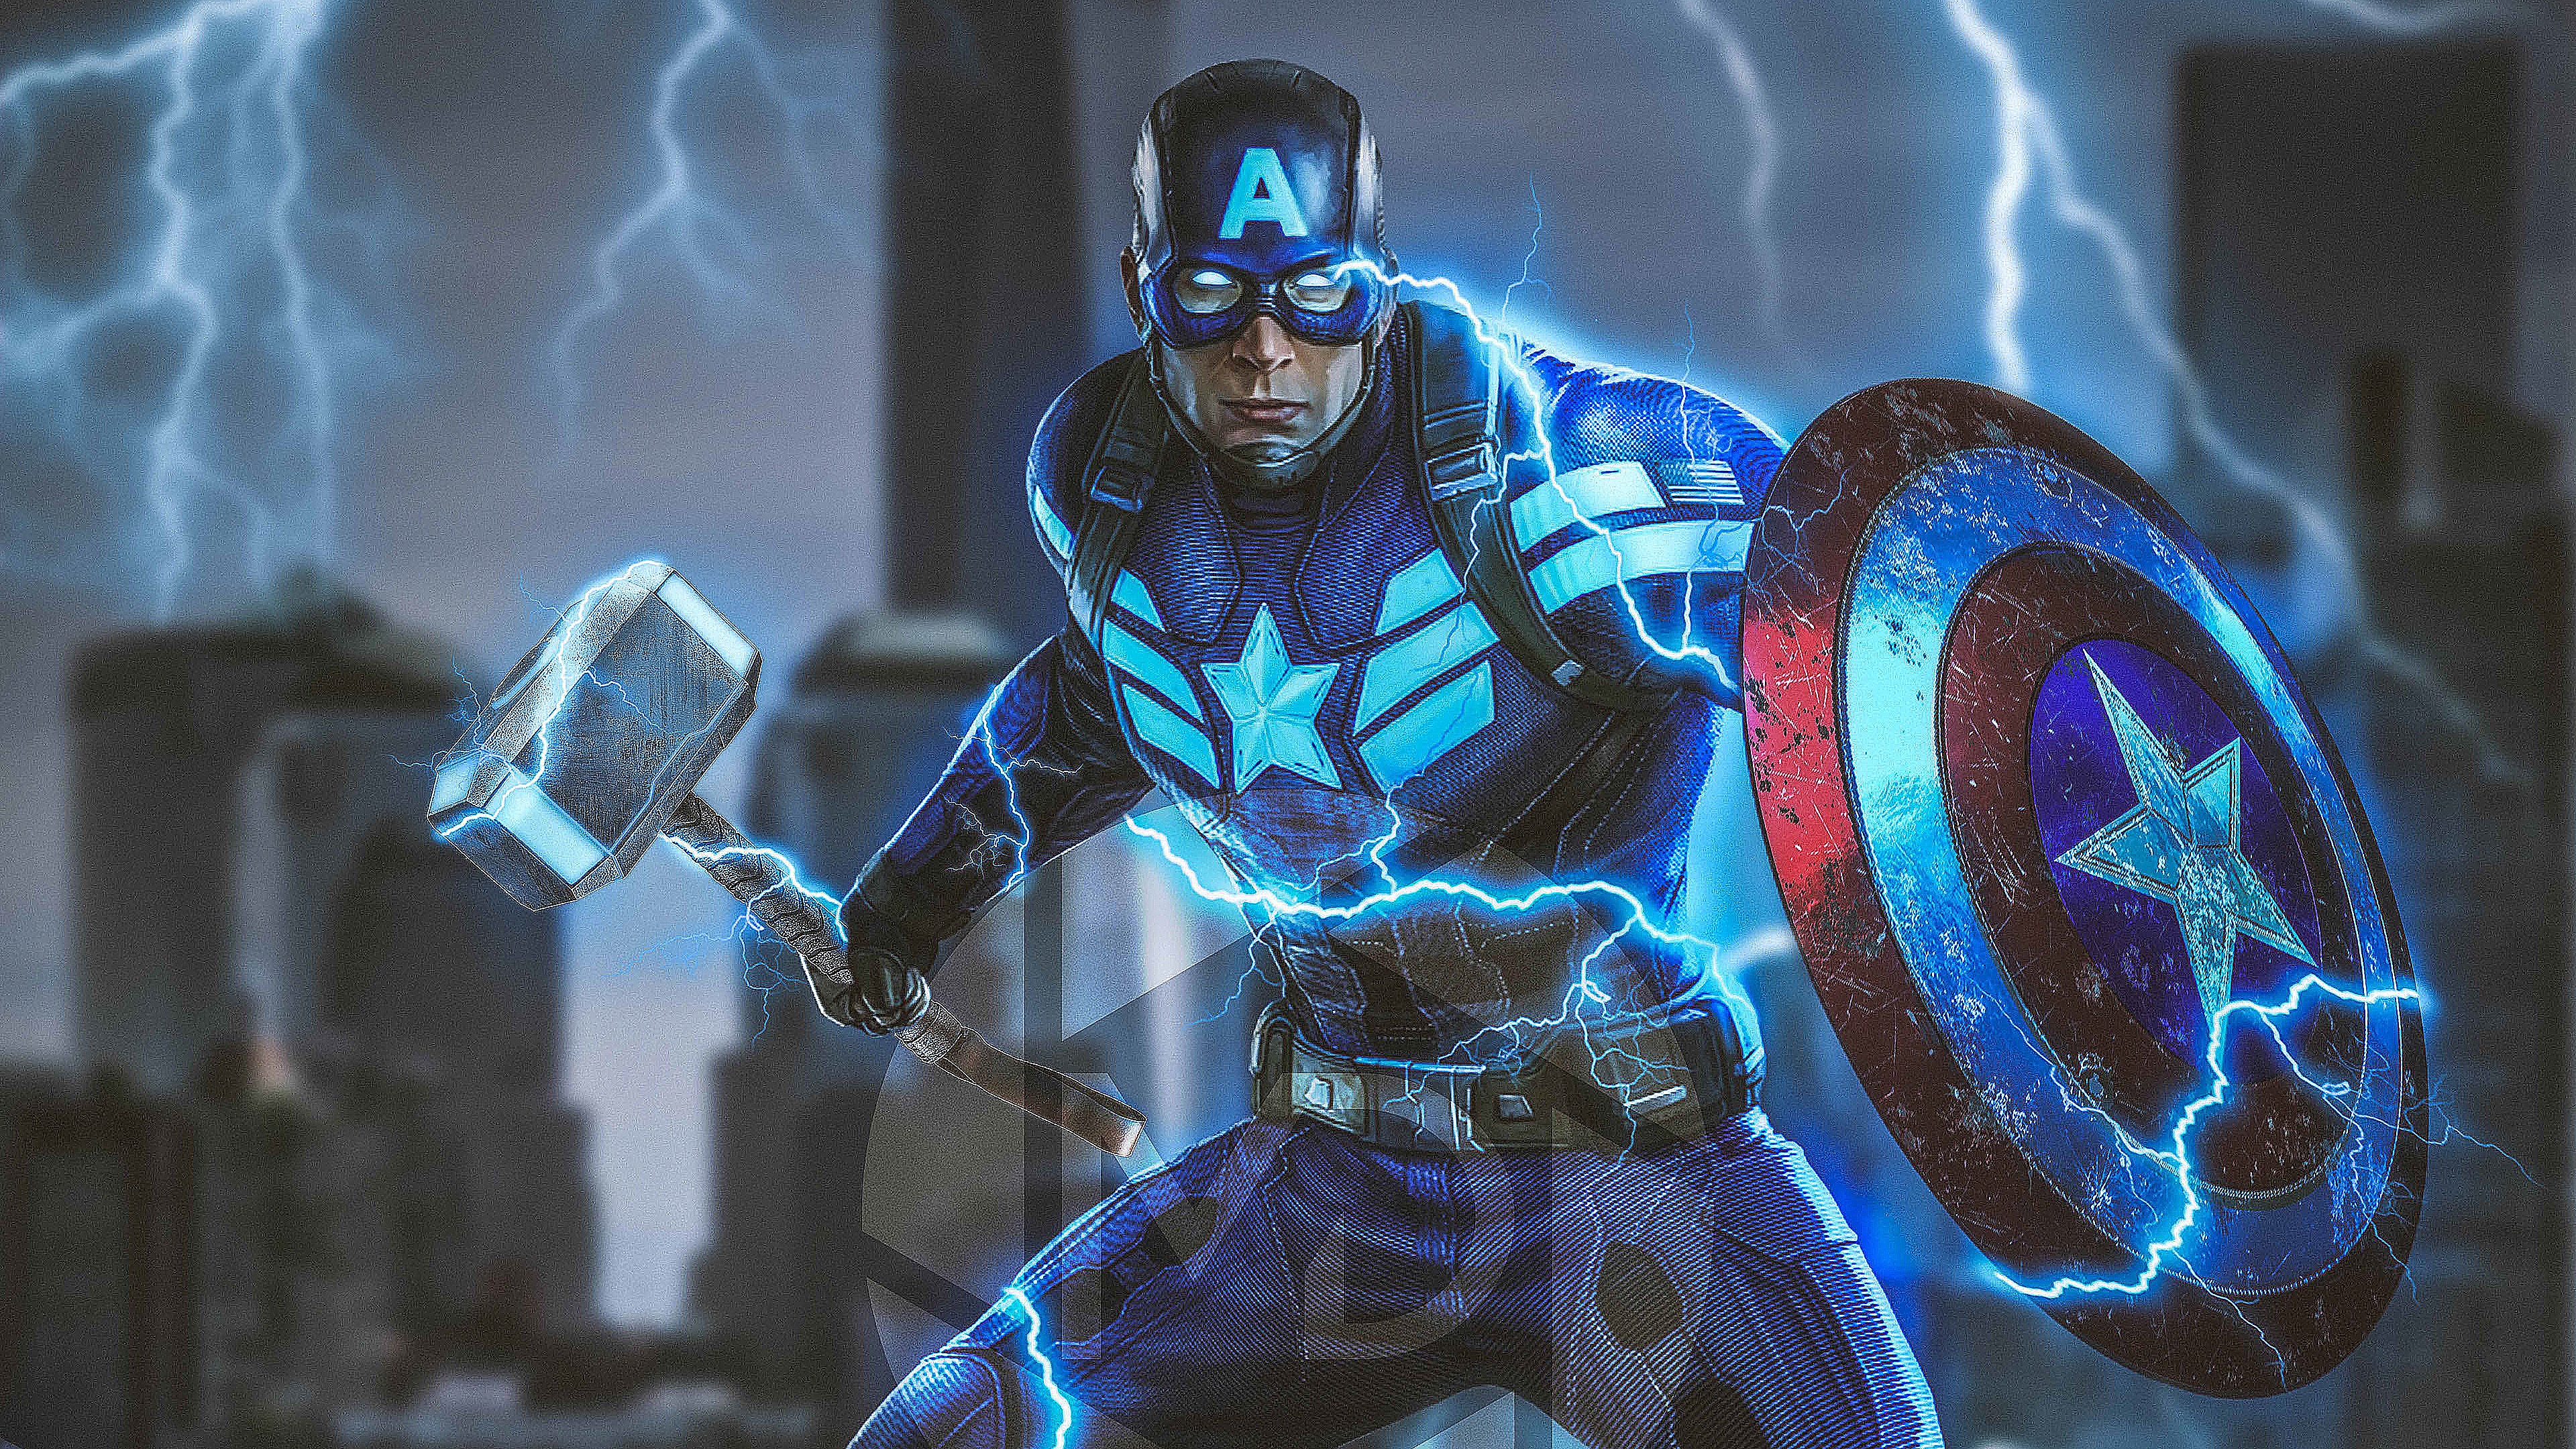 Wallpaper 4k Captain America Mjolnir Avengers Endgame 4k 2019 Wallpaper